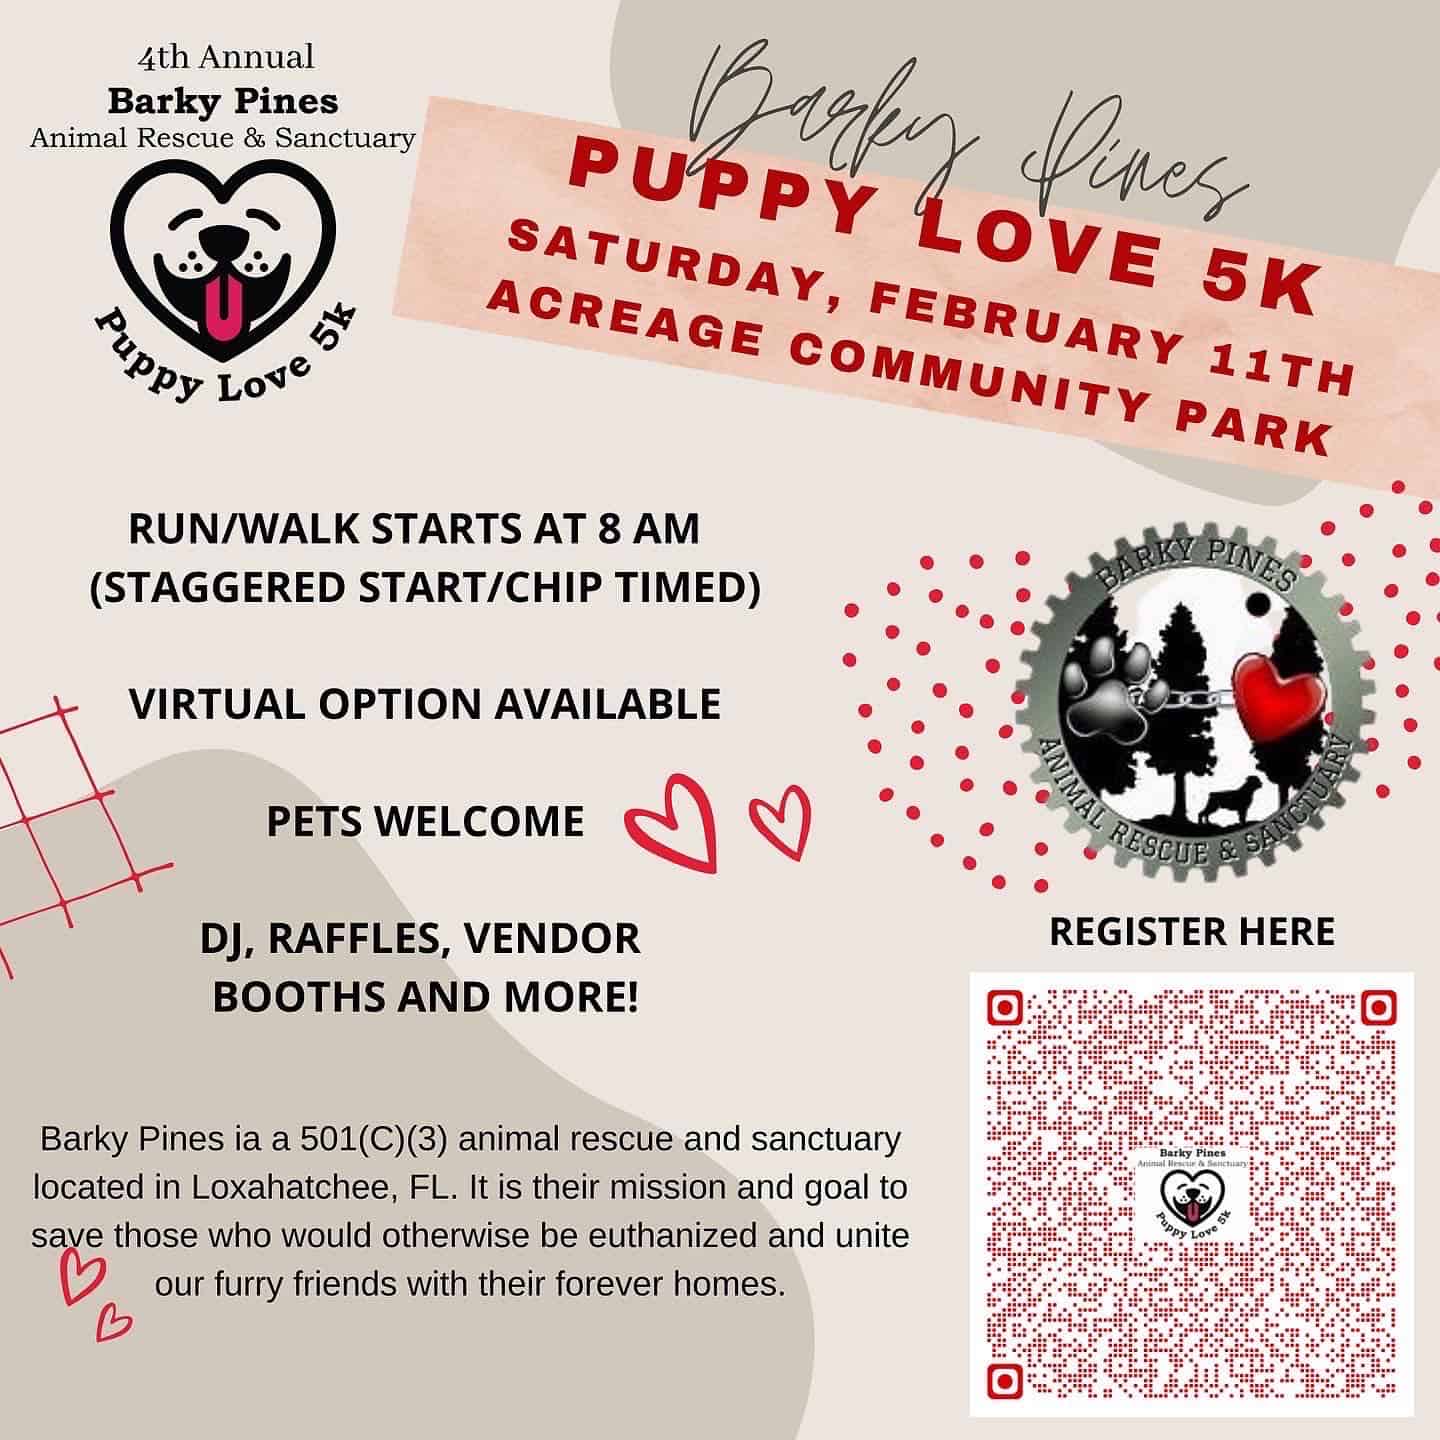 4th Annual Puppy Love 5k